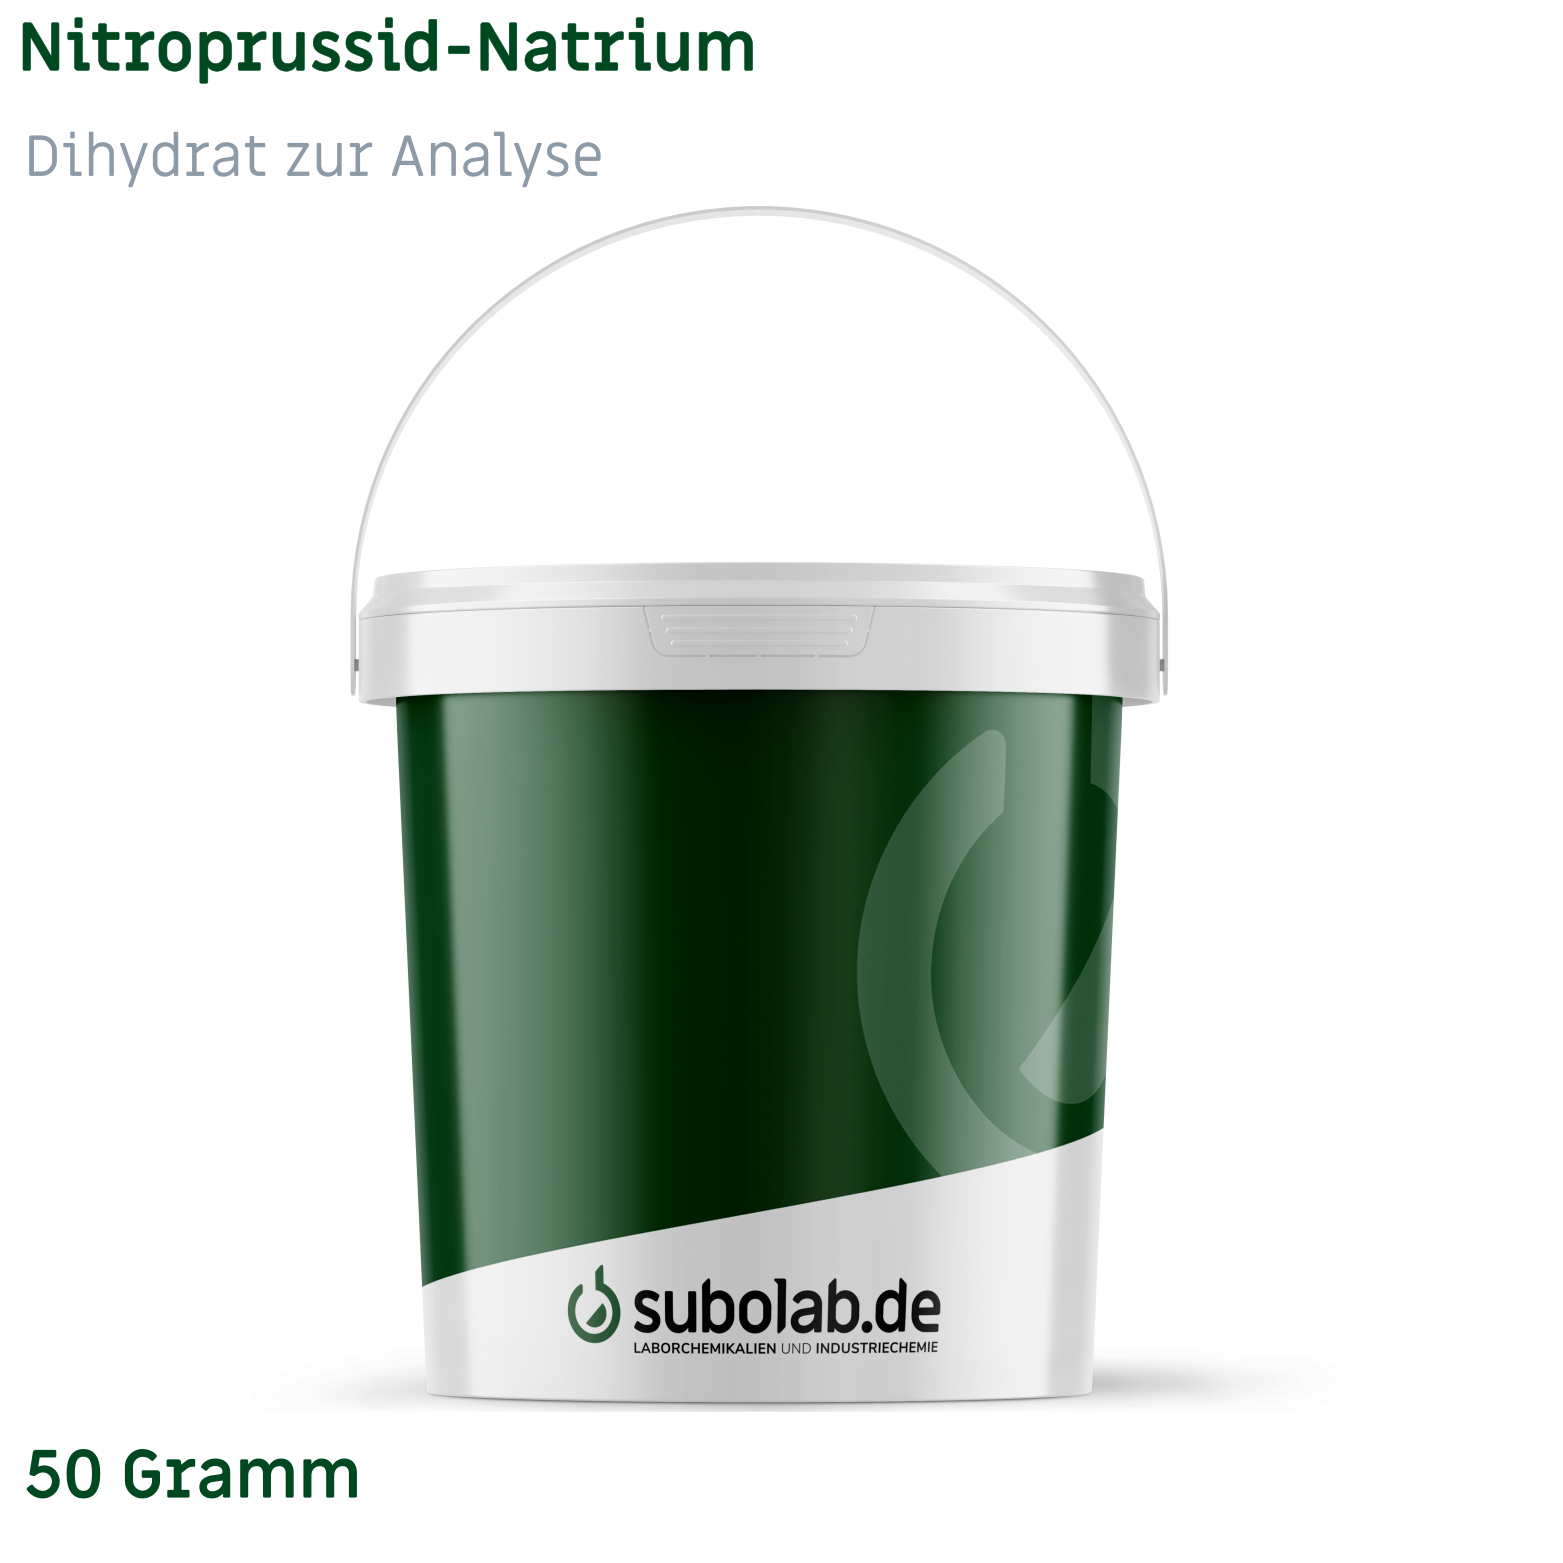 Bild von Nitroprussid-Natrium - Dihydrat zur Analyse (50 Gramm)